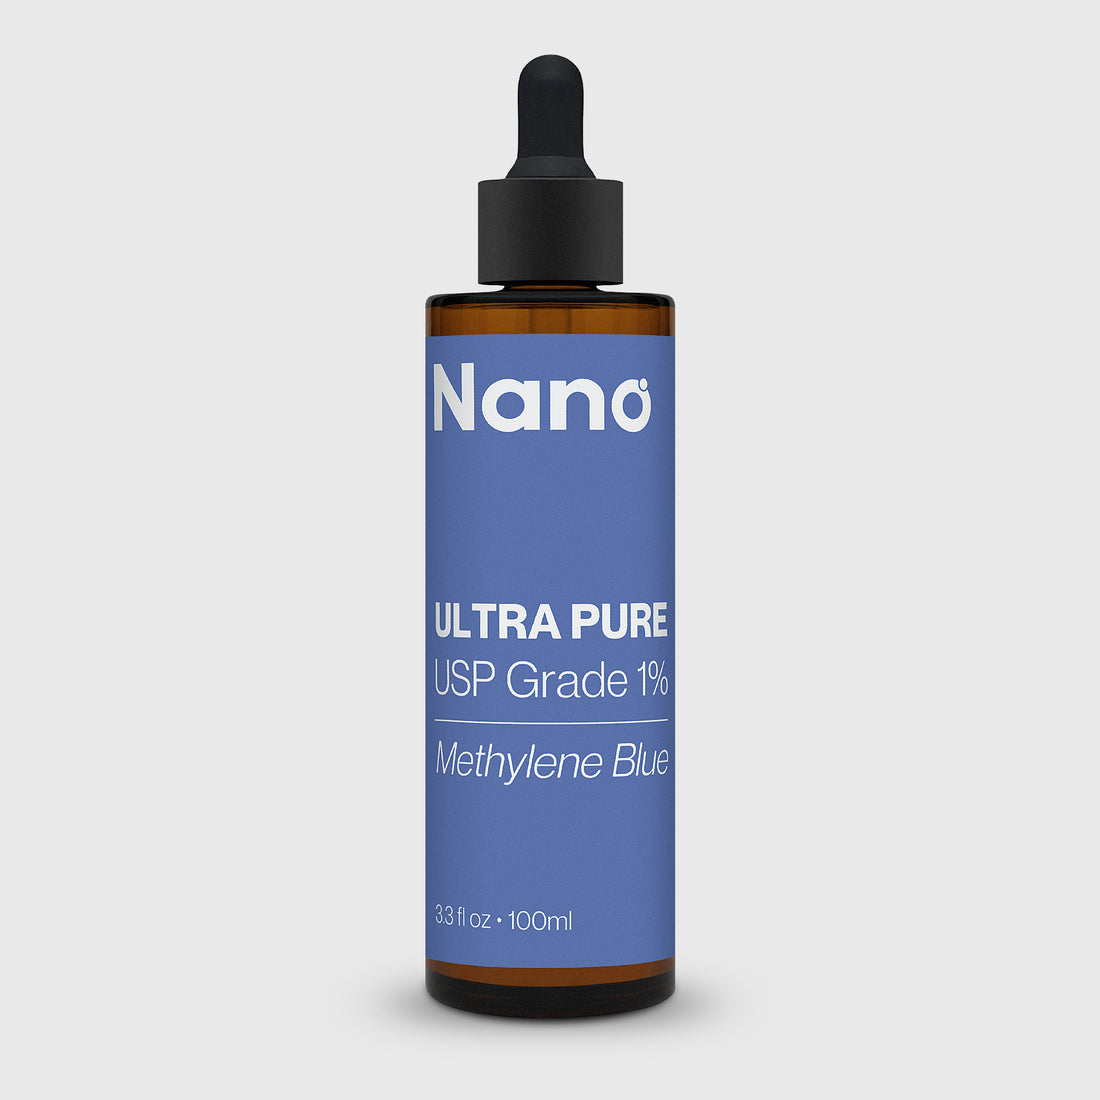 100ml bottle of Nano ultra pure USP grade 1% methylene blue supplement